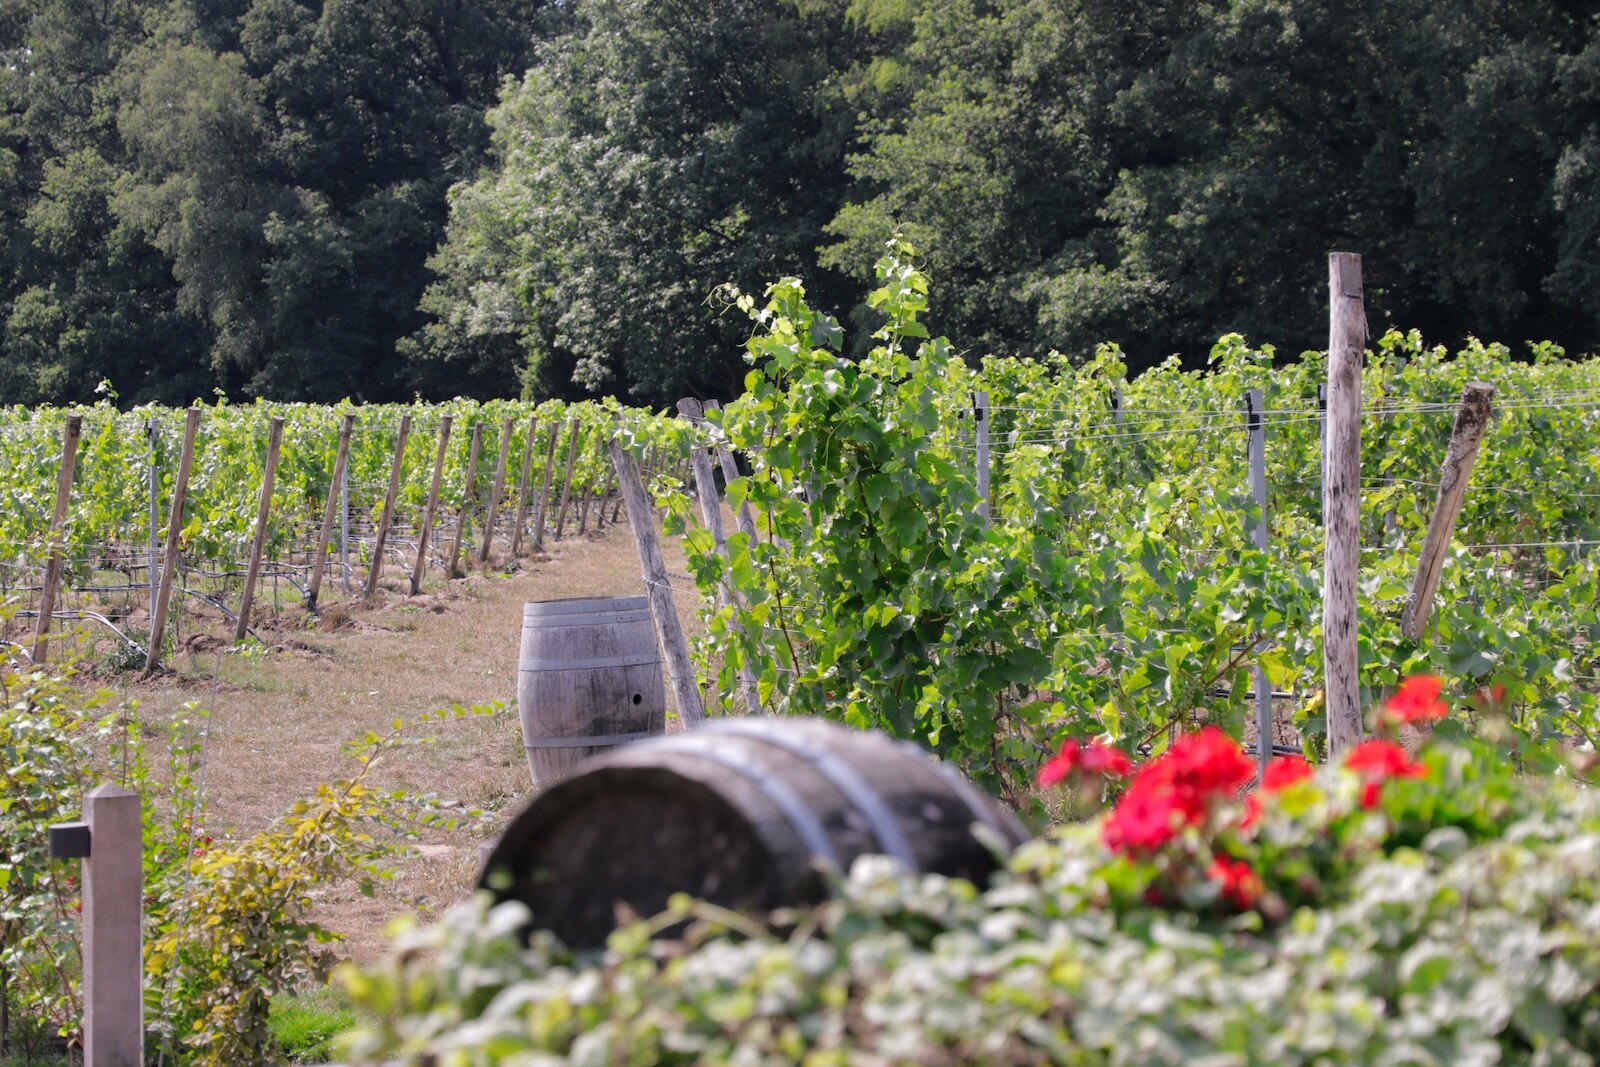 Vineyards of winery Hof van Twente